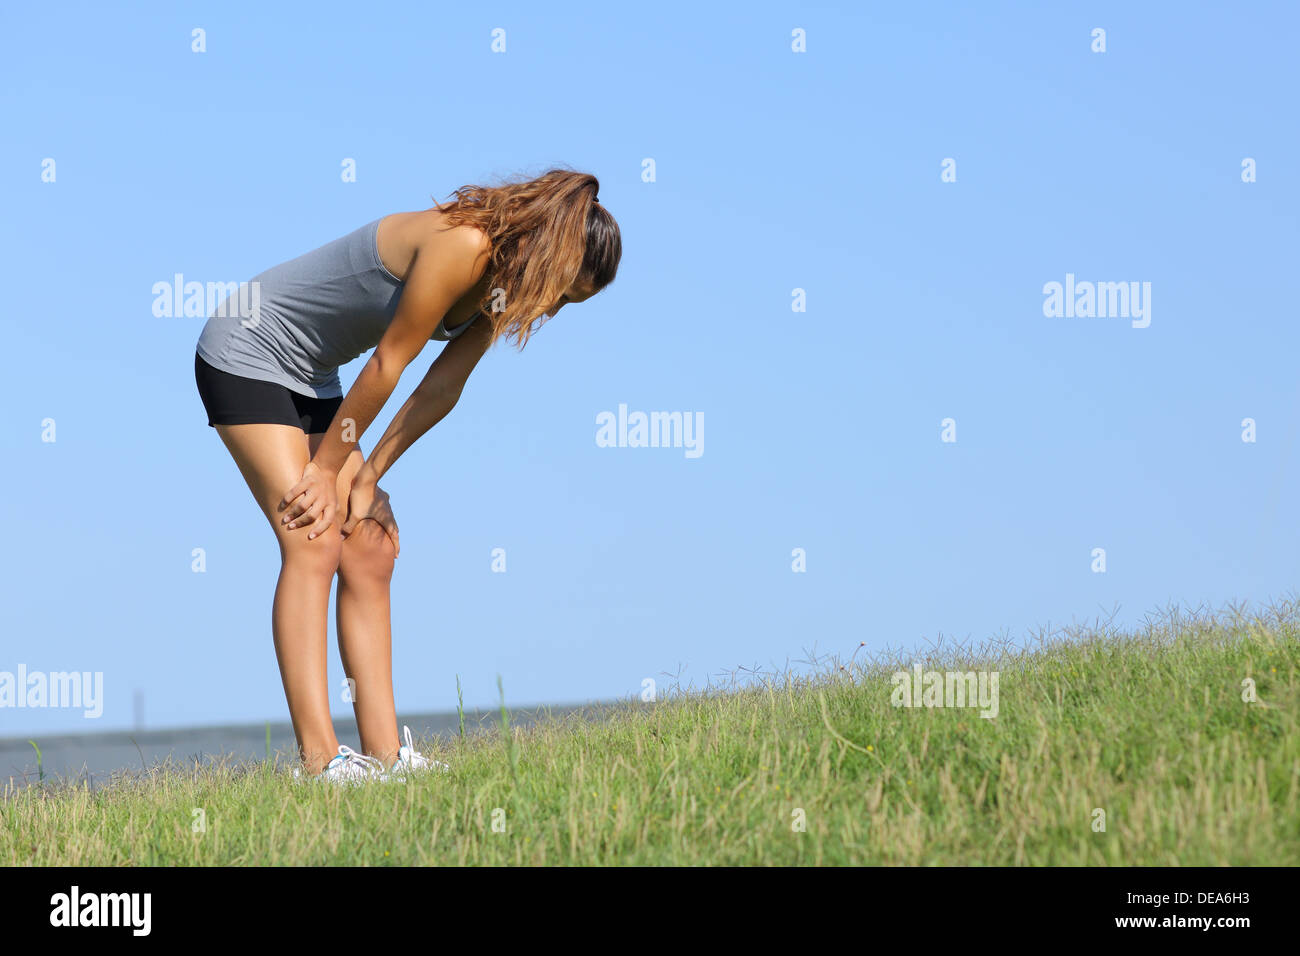 Fitness-Frau müde ruht auf dem Rasen mit dem Himmel im Hintergrund Stockfoto